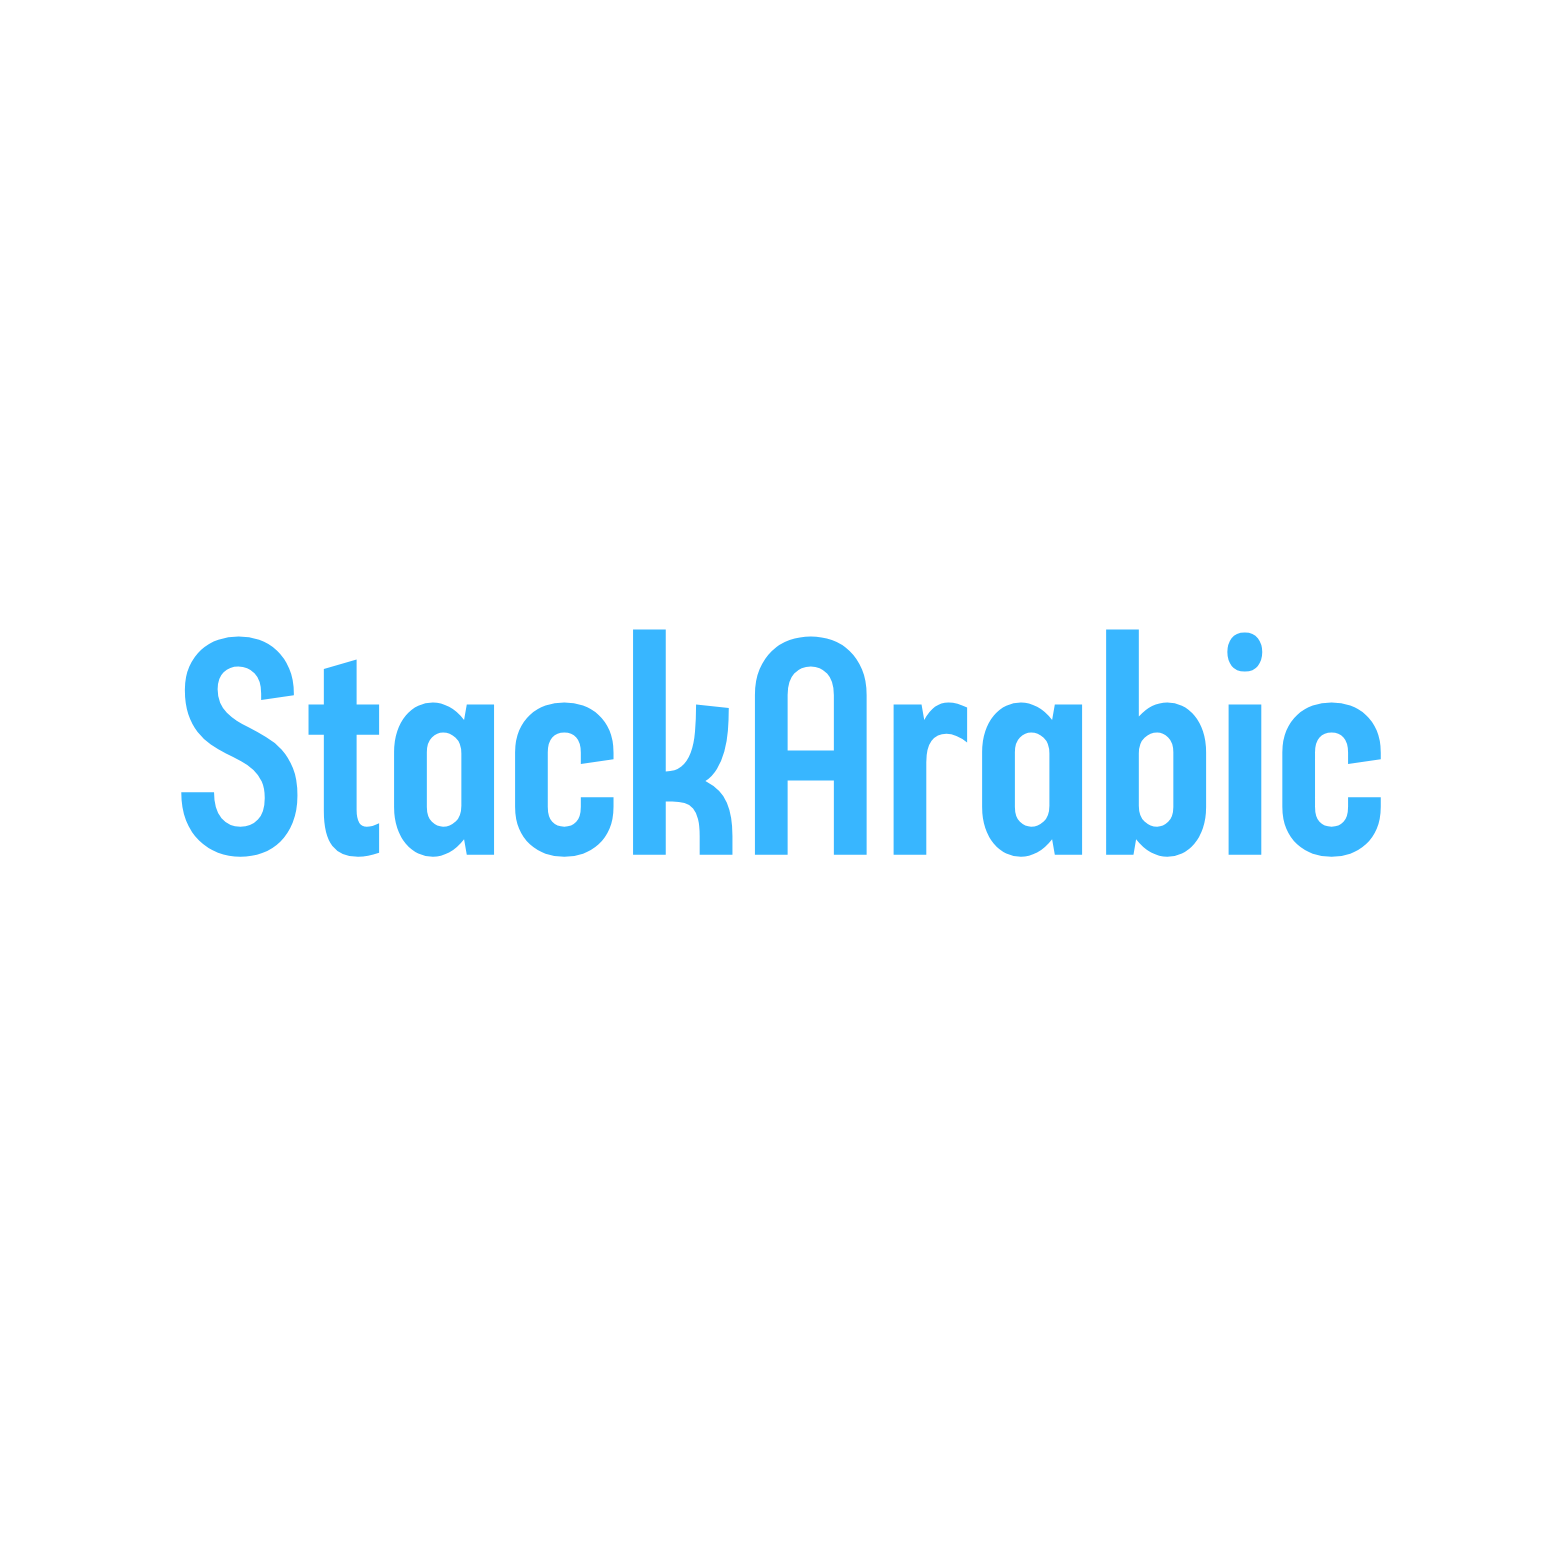 StackArabic